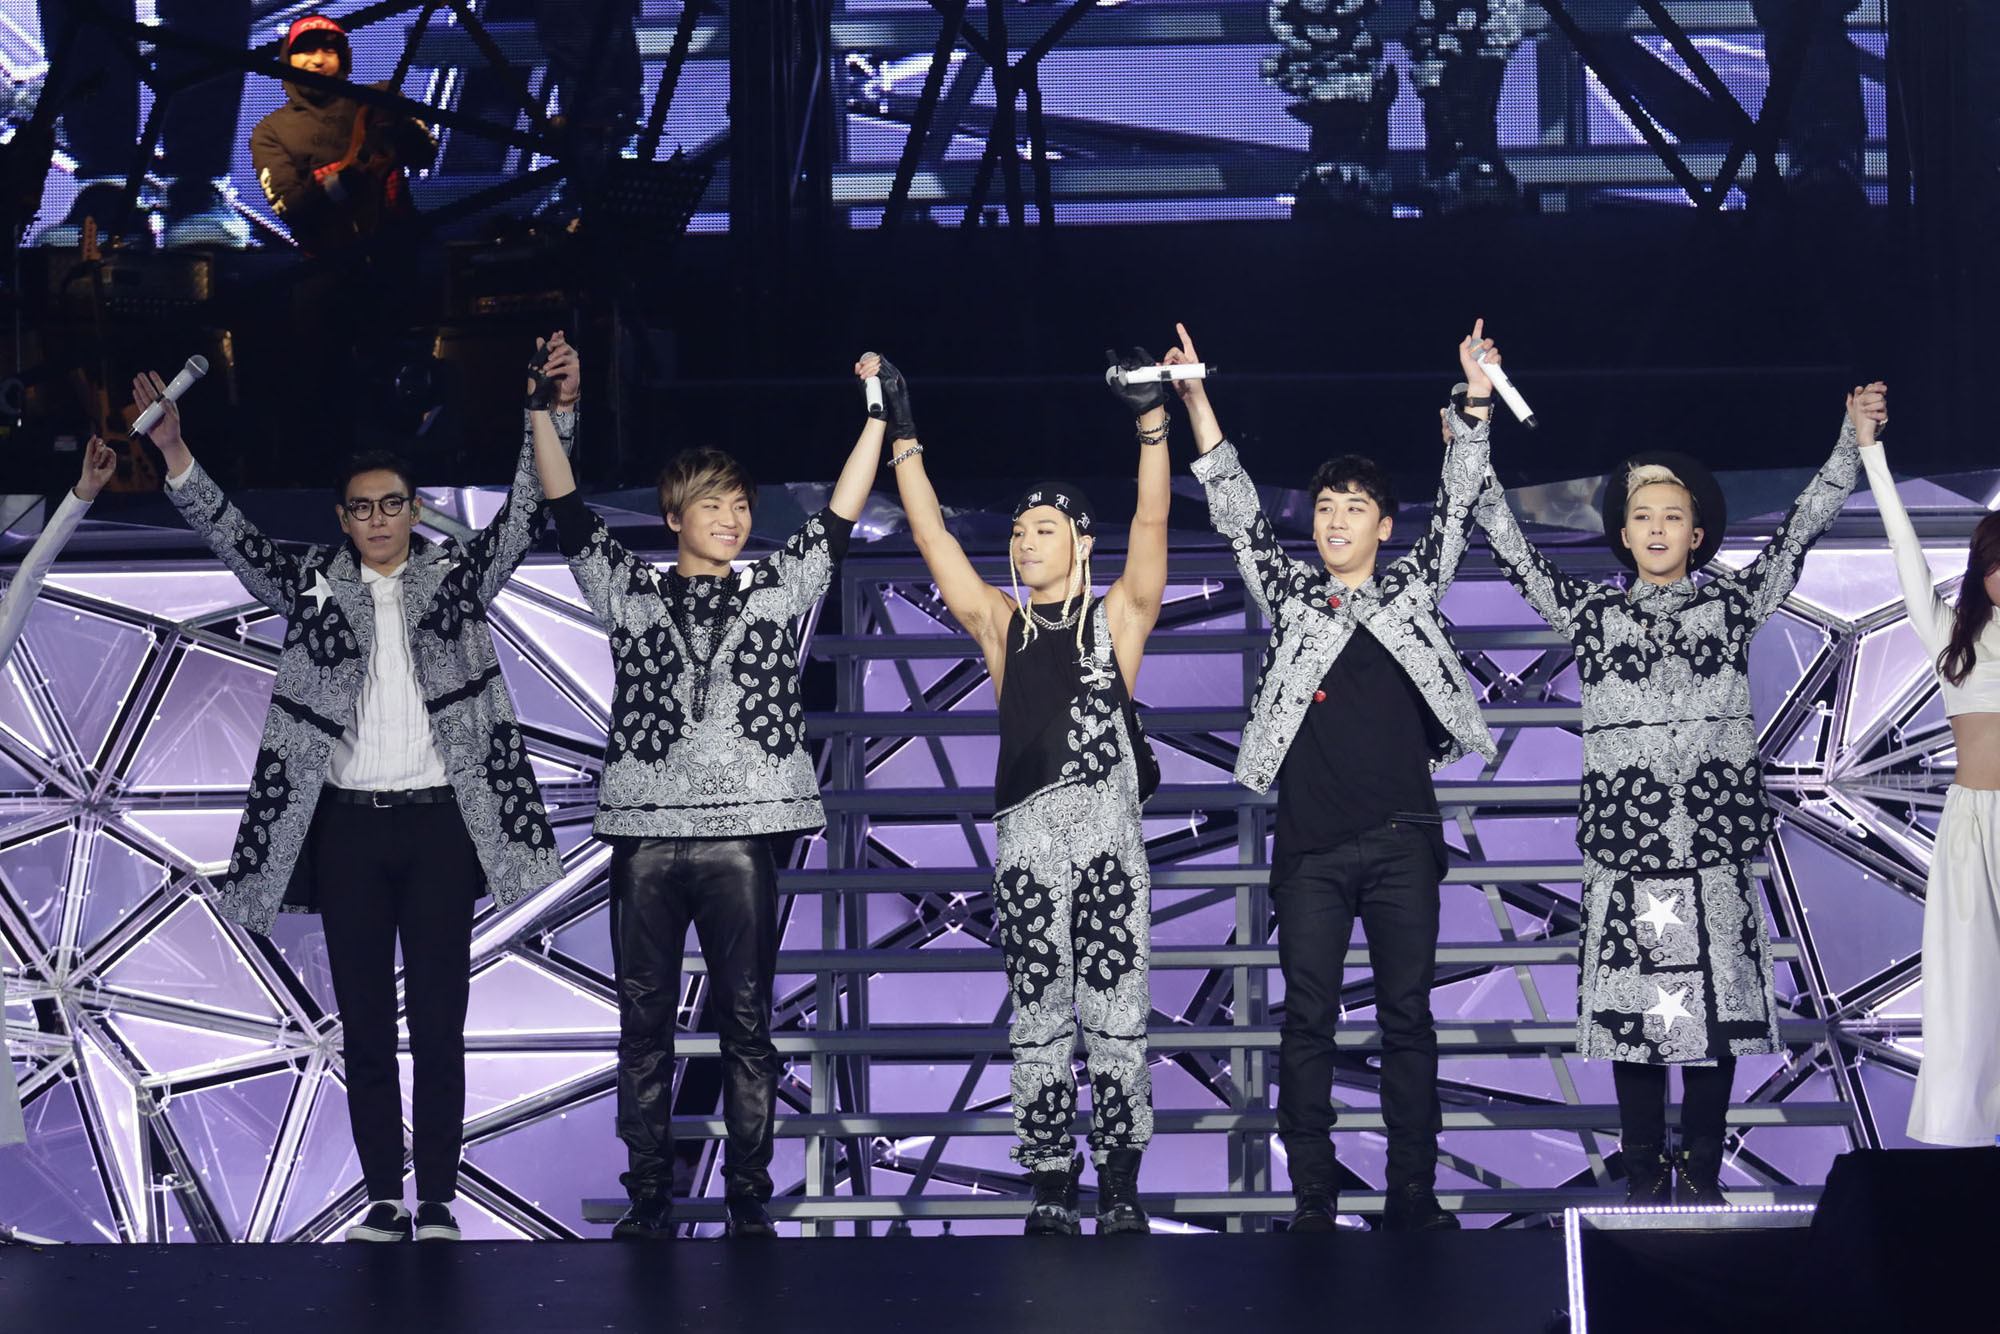 Bigbang 大熱狂の東京ドーム公演をレポート 6大ドームツアーは お も て な し 1 5 ウレぴあ総研